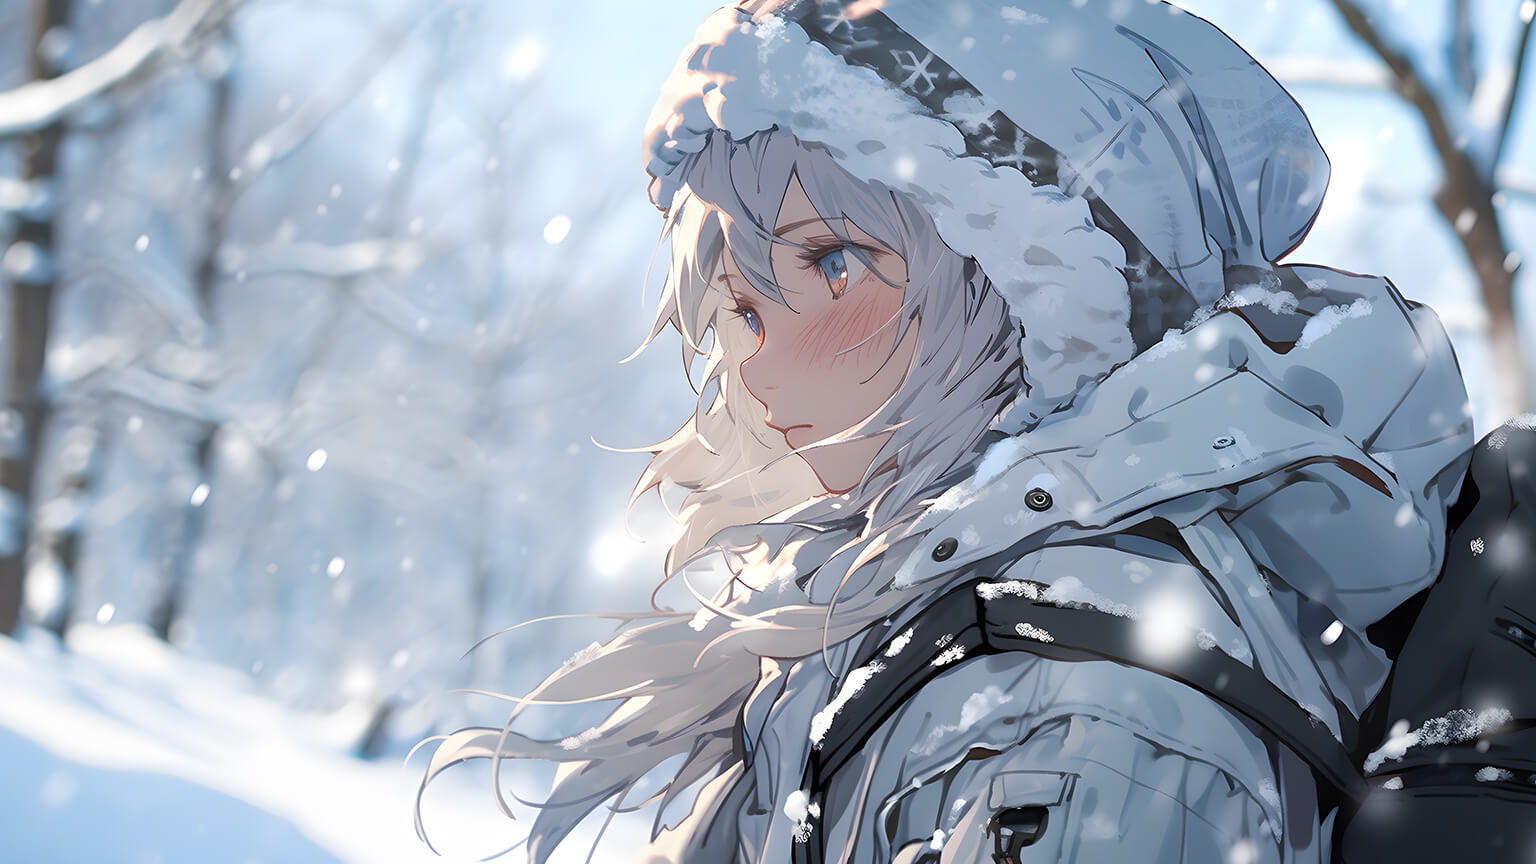 Cute Anime Girl Winter Forest Desktop Wallpaper - Anime Wallpaper